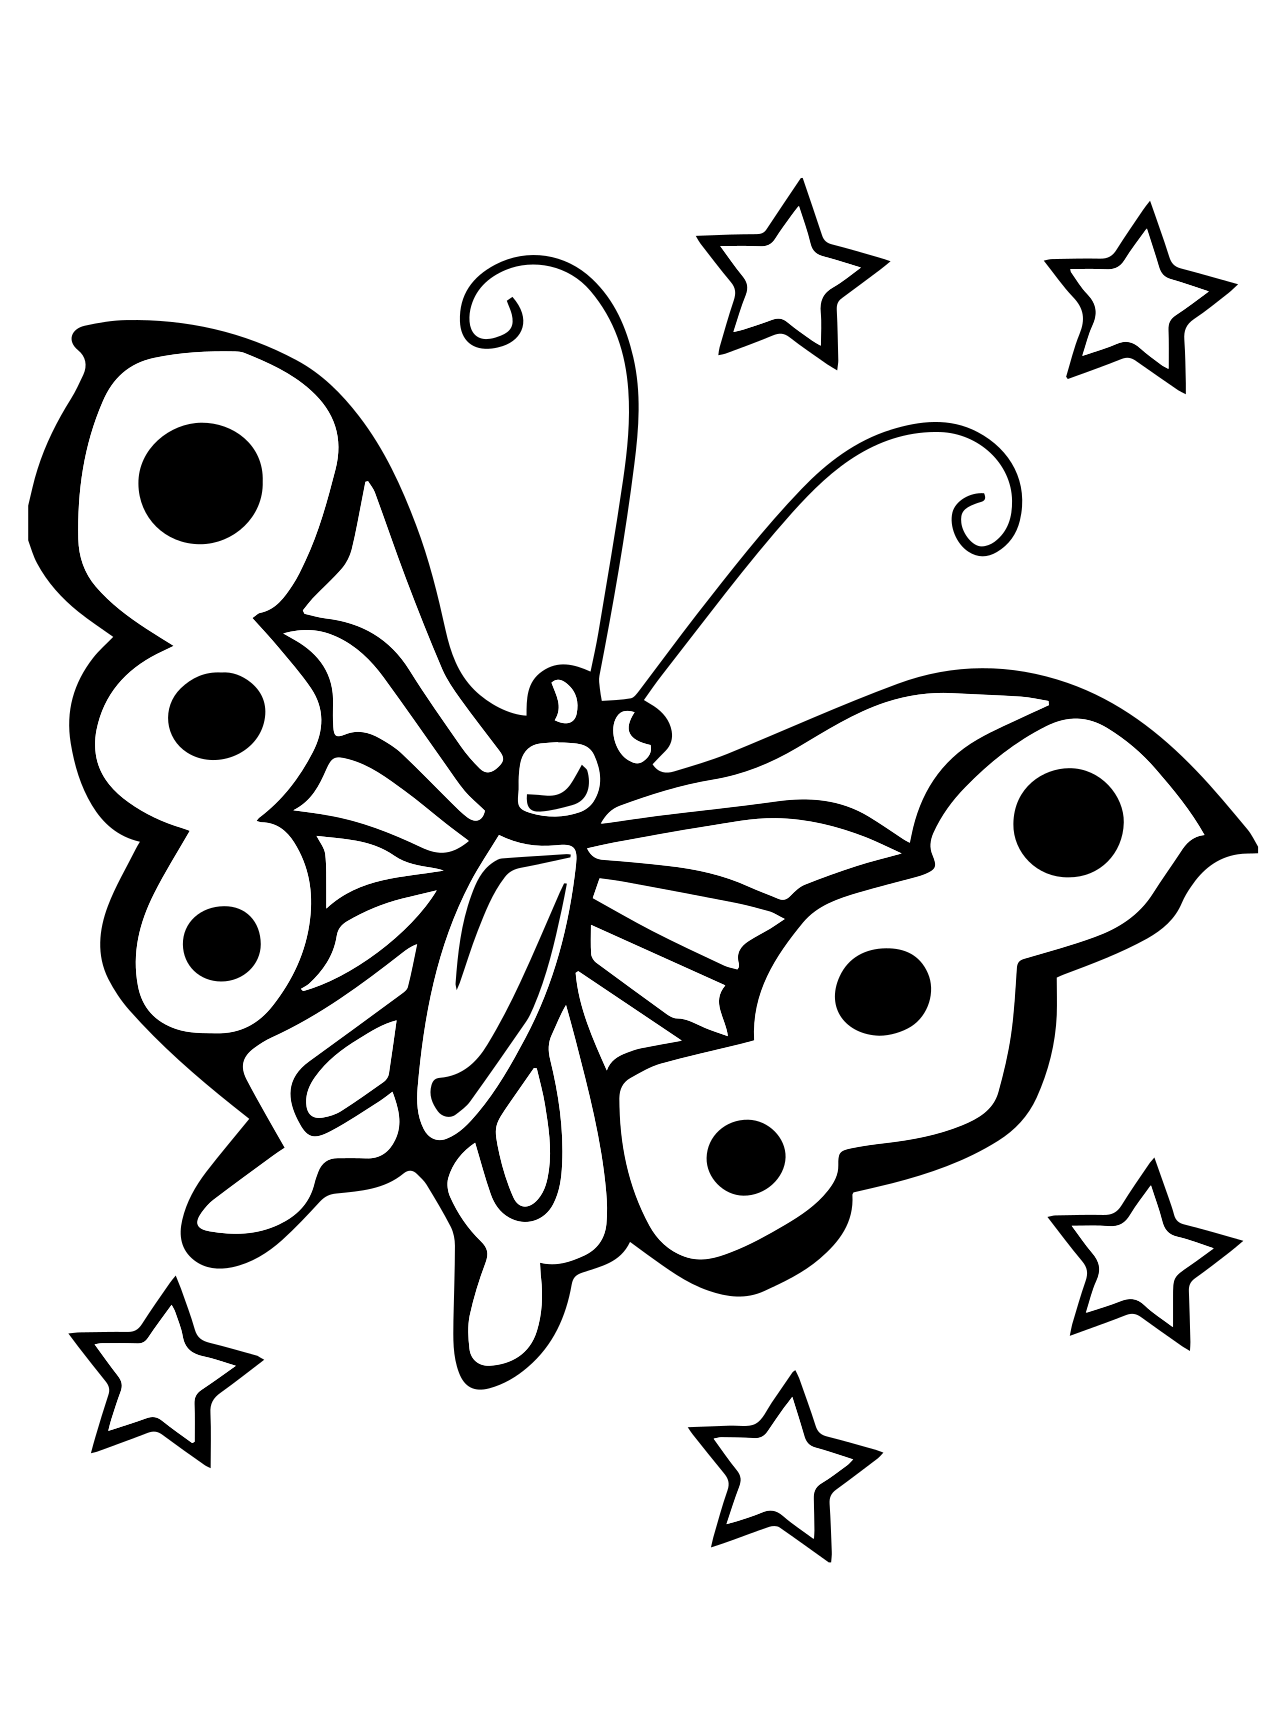 Раскраска 2 бабочки. Бабочка раскраска для детей. Раскраска для девочек бабочки. Трафареты рисунков для детей. Трафарет для раскрашивания детям.